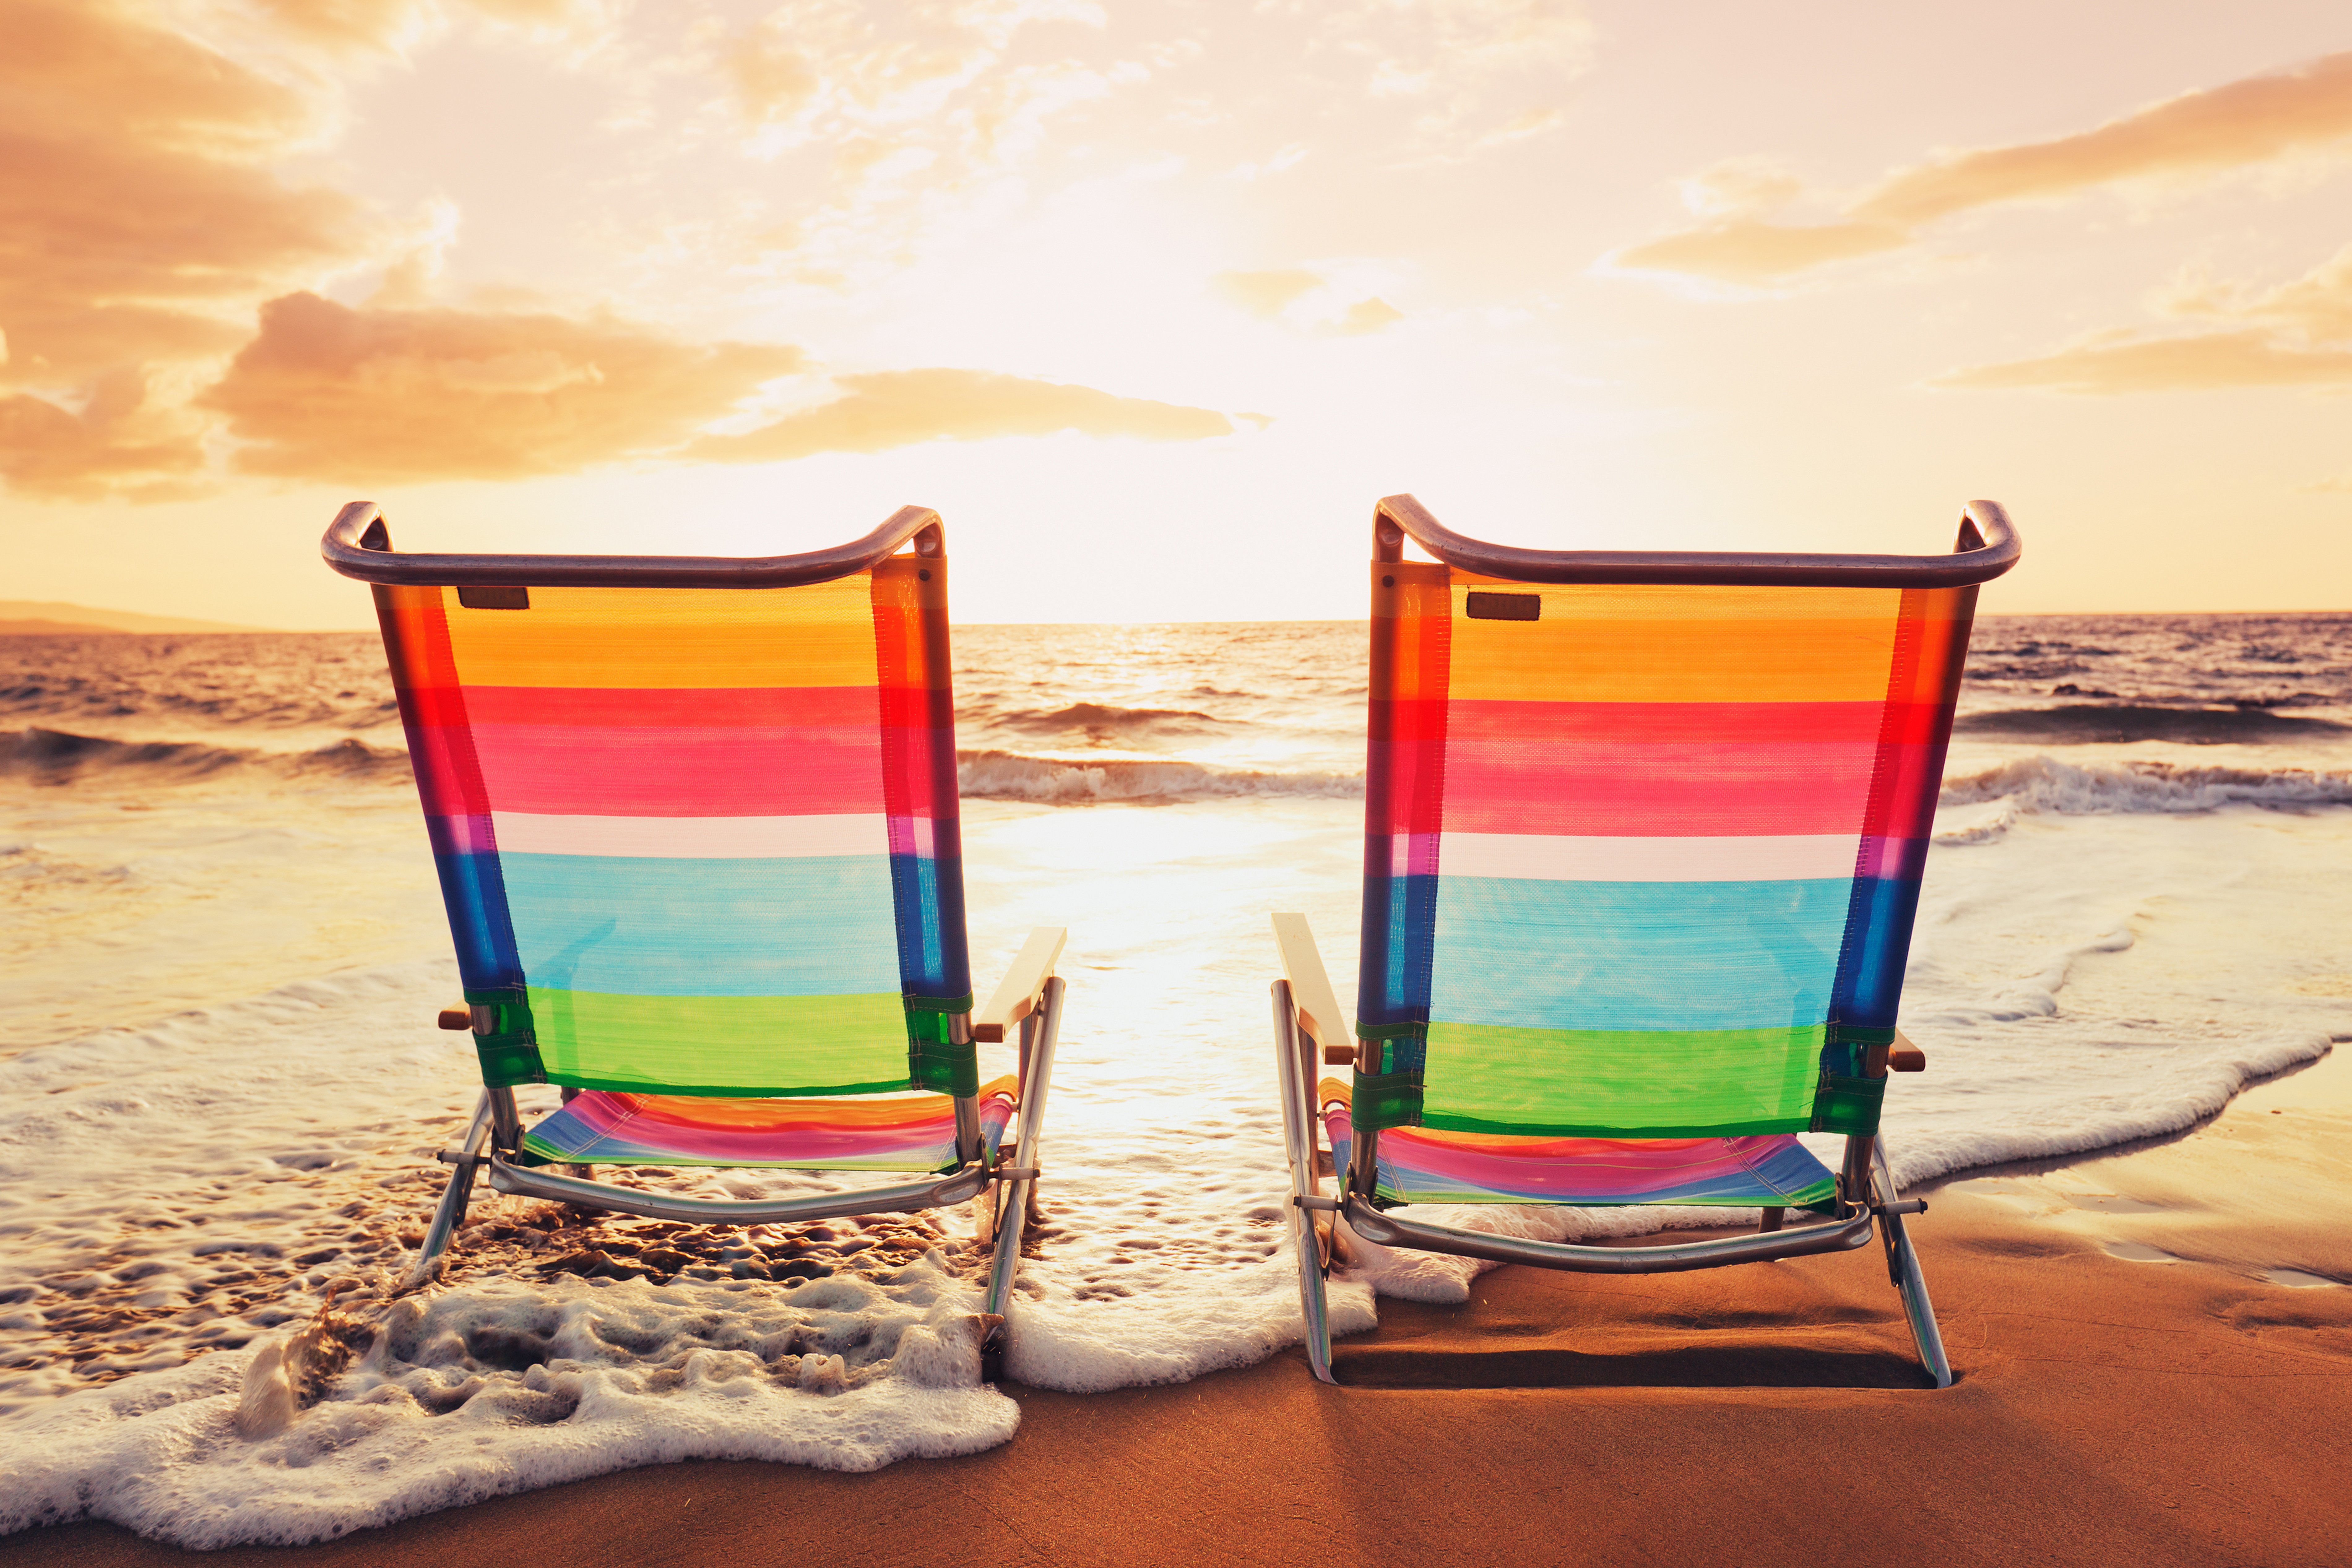 beach, Chair, Chairs, Clouds, Colored, Beach, Chair, Deck, Chair, Empty